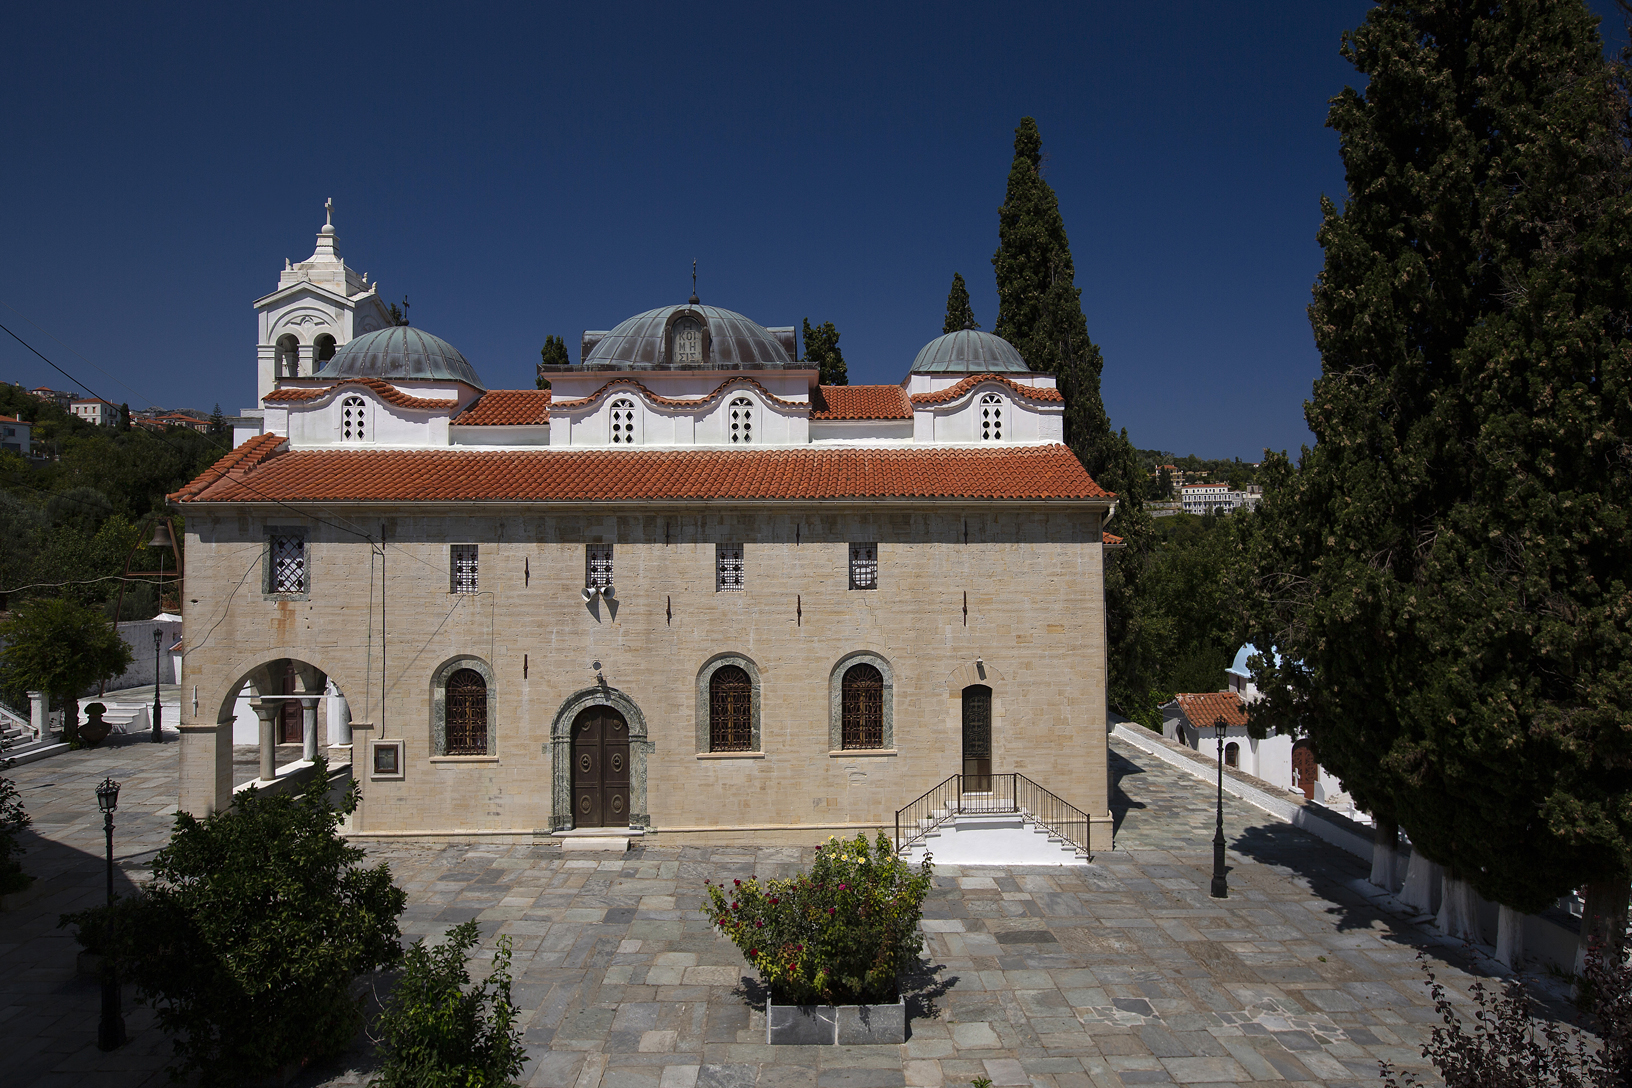 Ναός Παναγίας Λιαουτσάνισσας, Κύμη. Φωτογραφία: ©Βασίλης Συκάς, για τον Δήμο Κύμης-Αλιβερίου